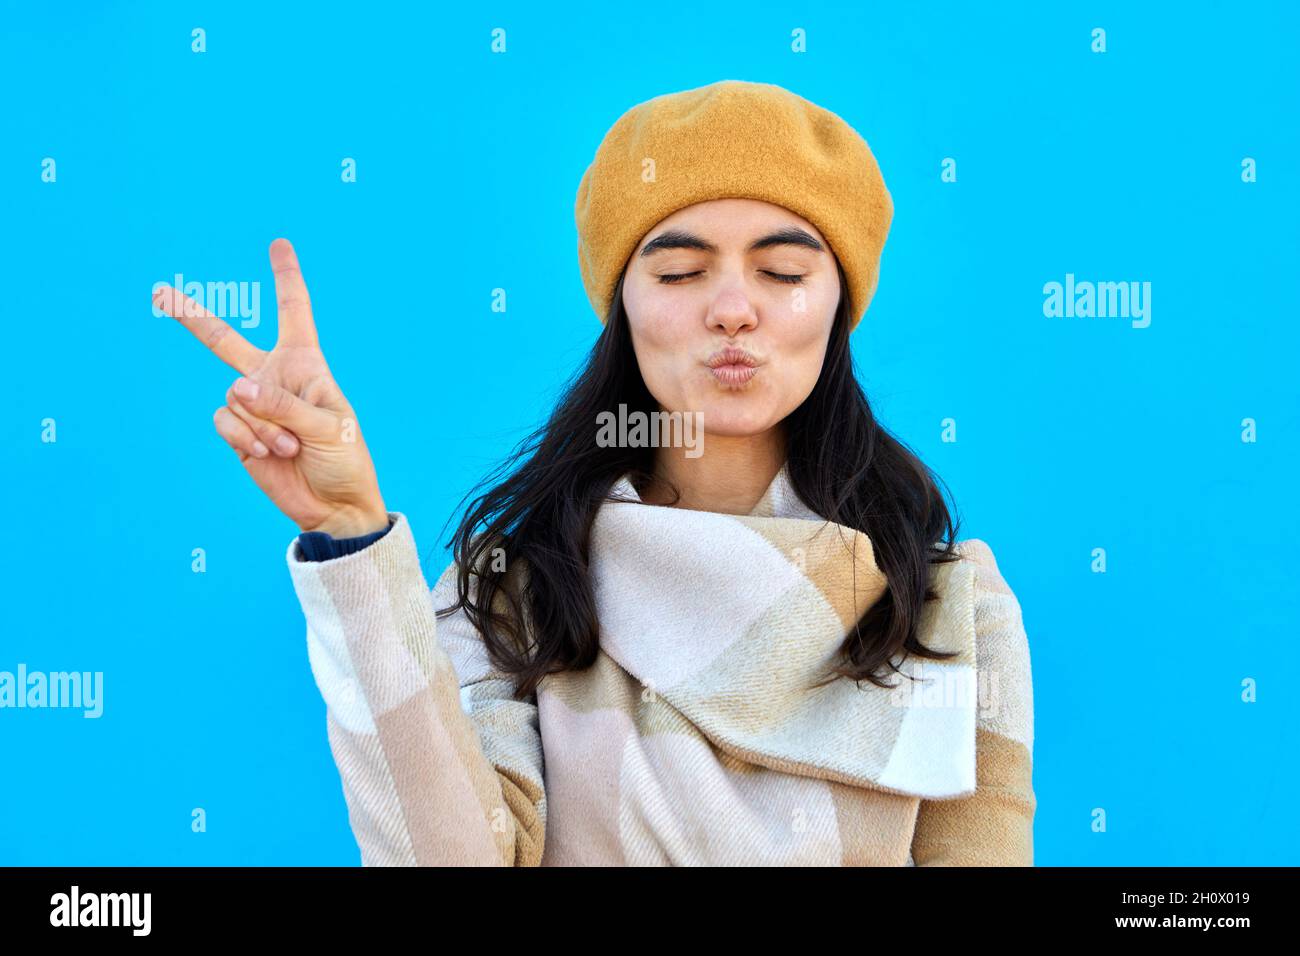 Foto von schönen verträumt Dame Schlag Luft Kuss zeigen V-Zeichen schließen Augen tragen beige Baskenmütze und Mantel isoliert Biue Farbe Hintergrund Stockfoto